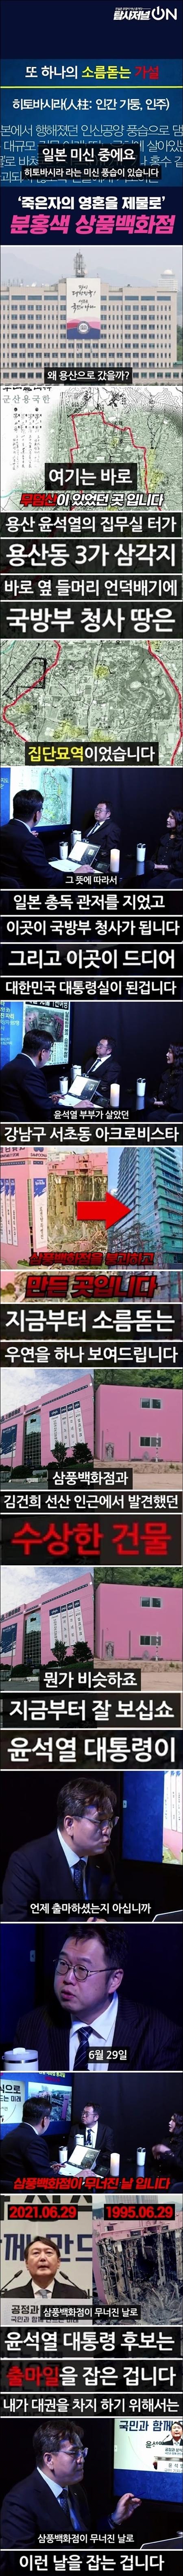 굥산주의 사이비, 윤석열 출마일은 삼풍 붕괴일(소).jpg